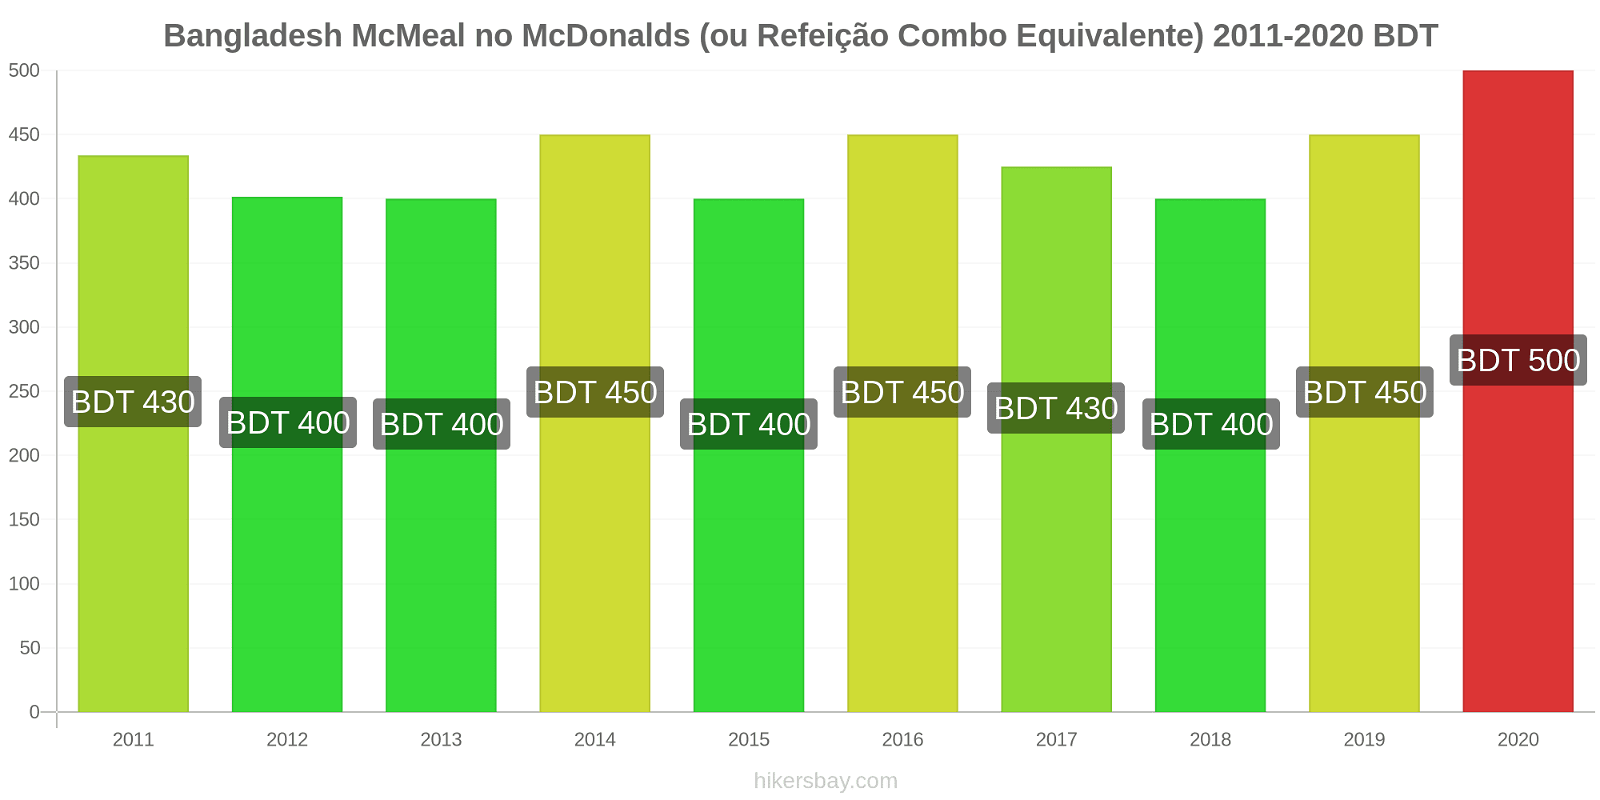 Bangladesh variação de preço McMeal no McDonald ' s (ou refeição Combo equivalente) hikersbay.com